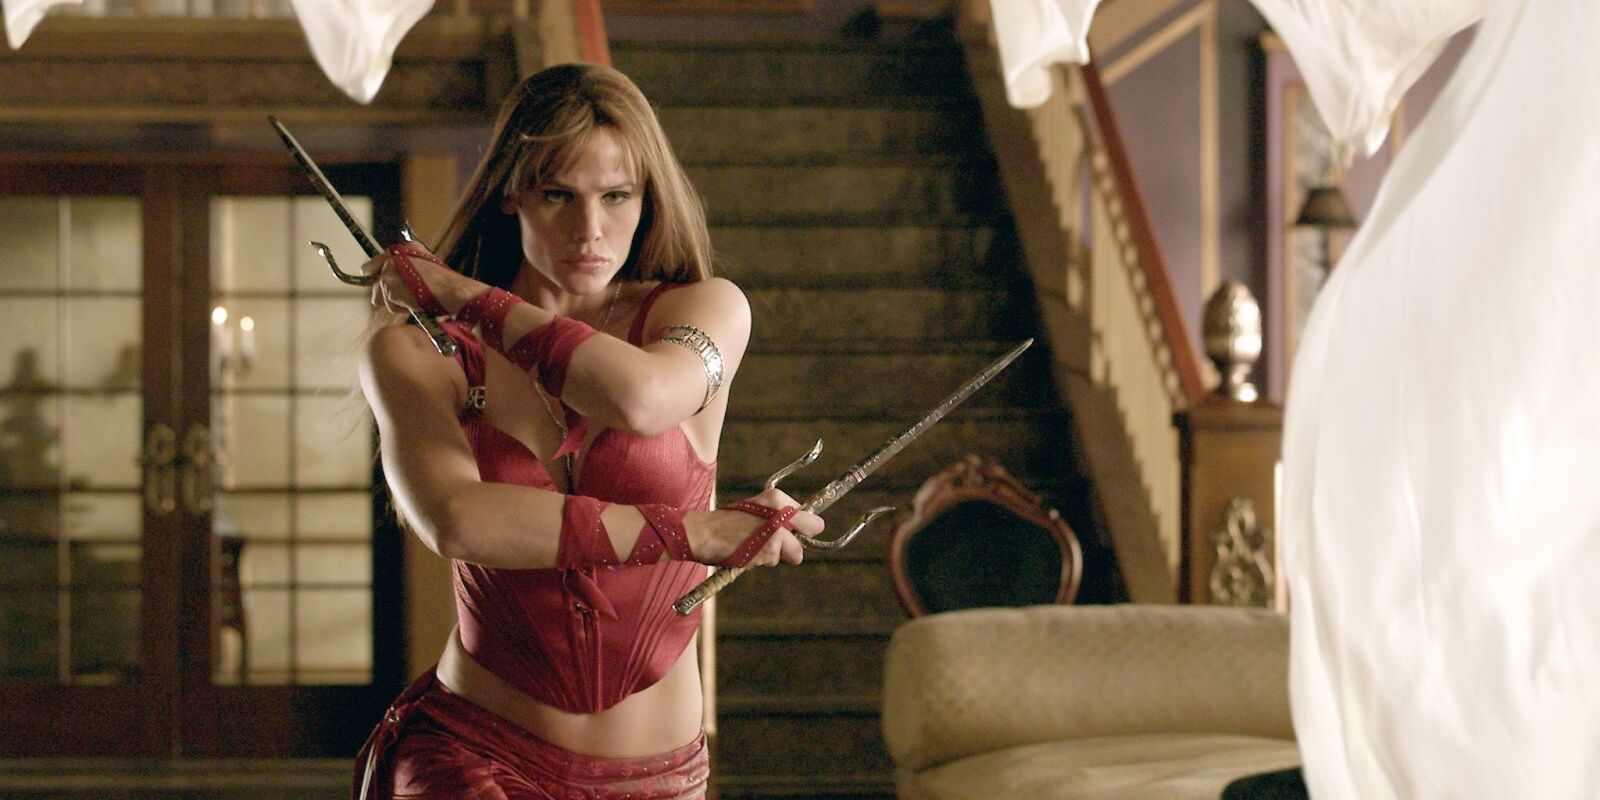 Jennifer Garner as Elektra wielding weapons